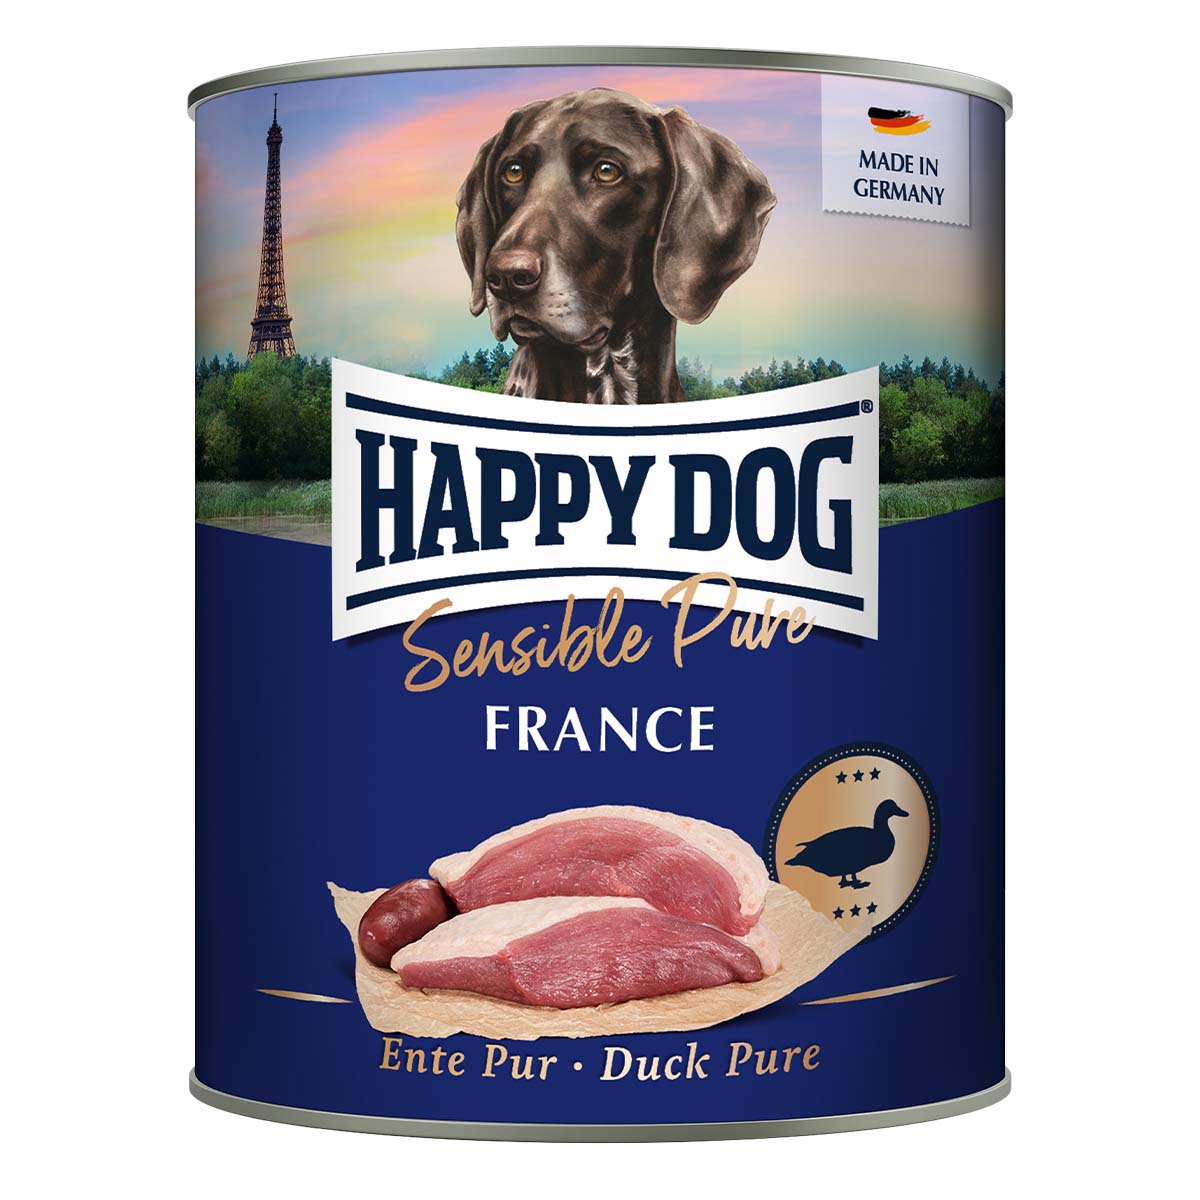 Happy Dog Pur čisté kachní maso 24x800g